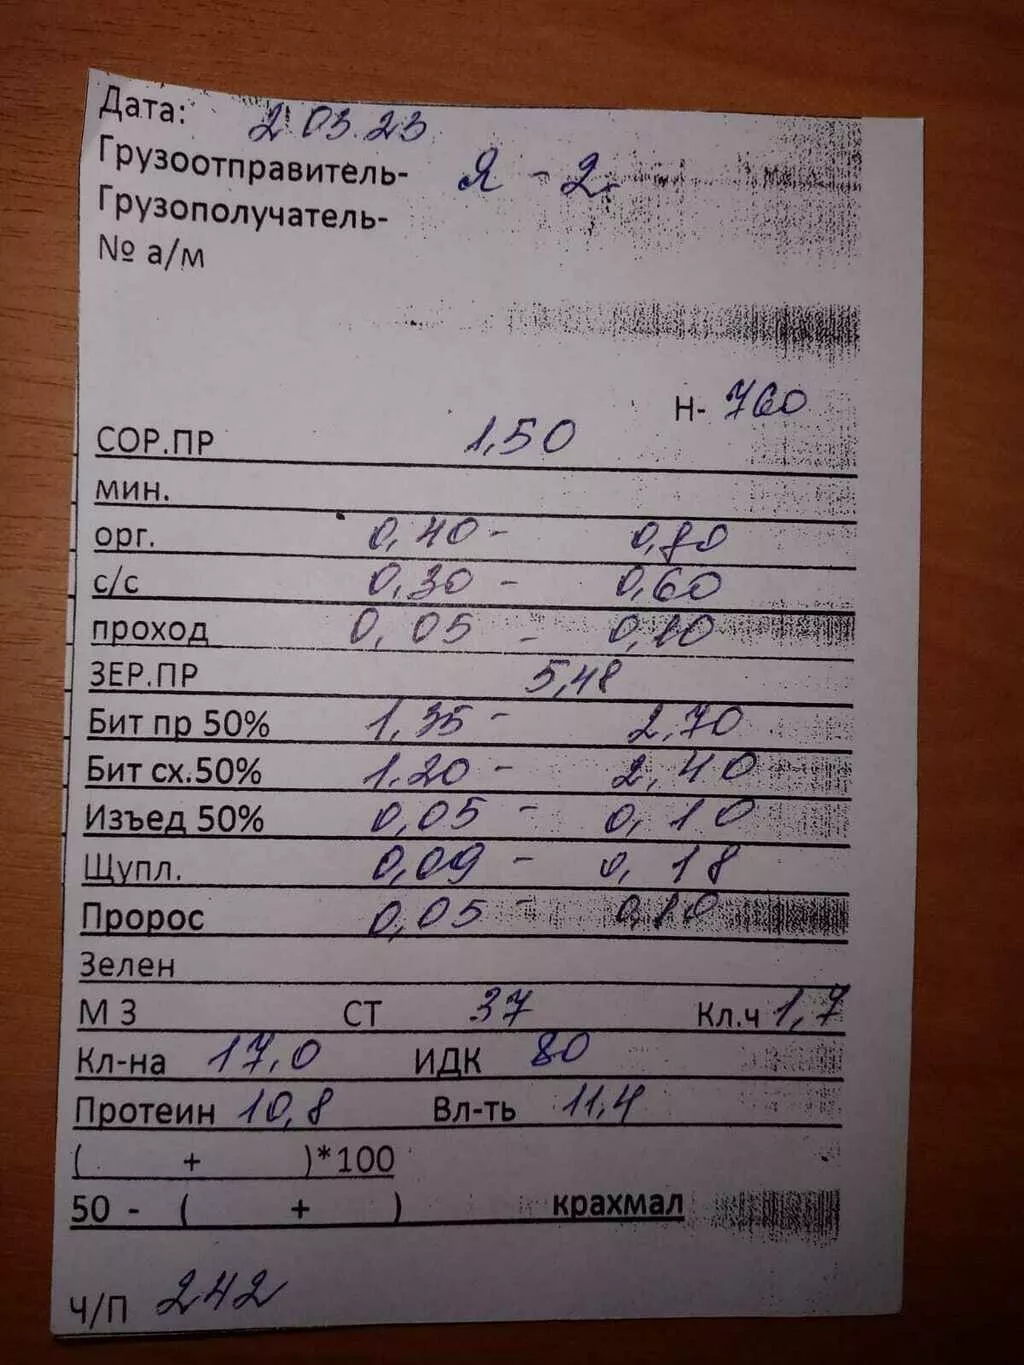 пшеница 5 класс 300тонн наличка  в Волгограде и Волгоградской области